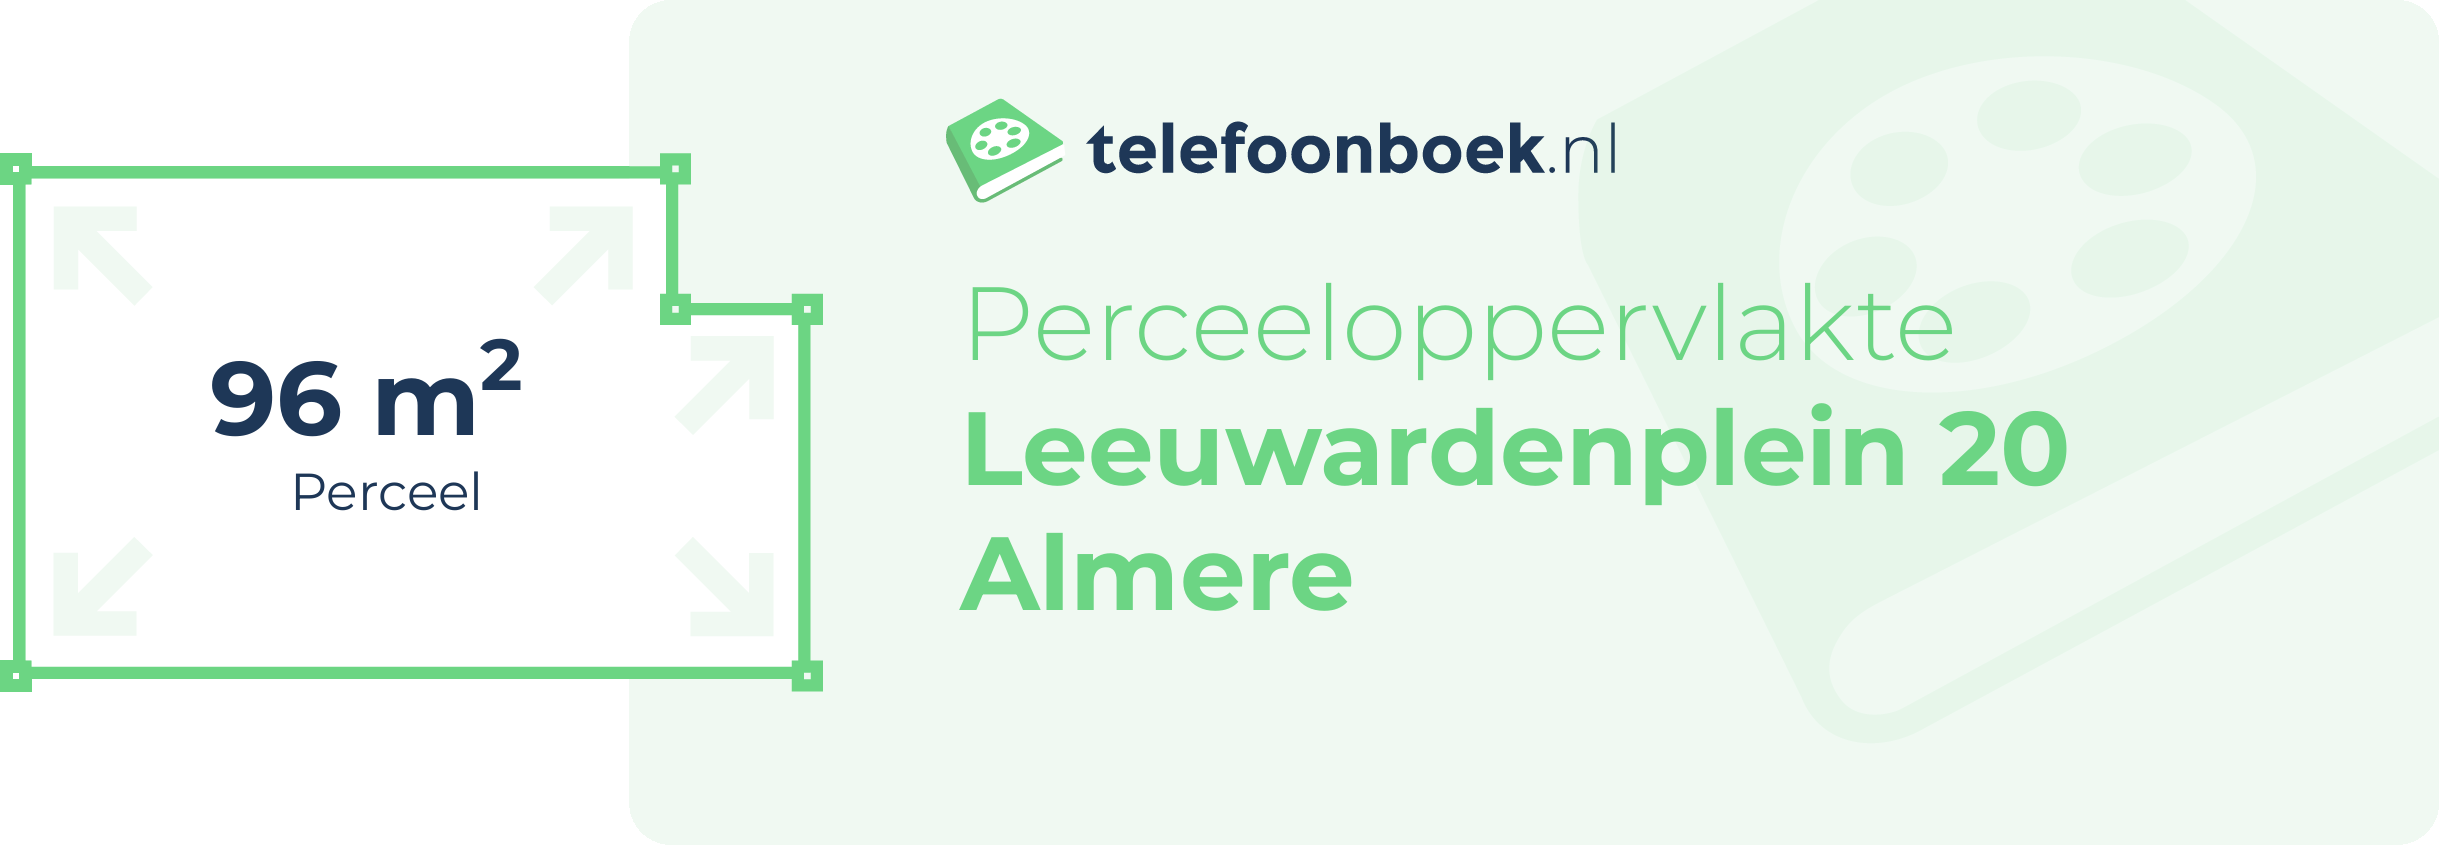 Perceeloppervlakte Leeuwardenplein 20 Almere